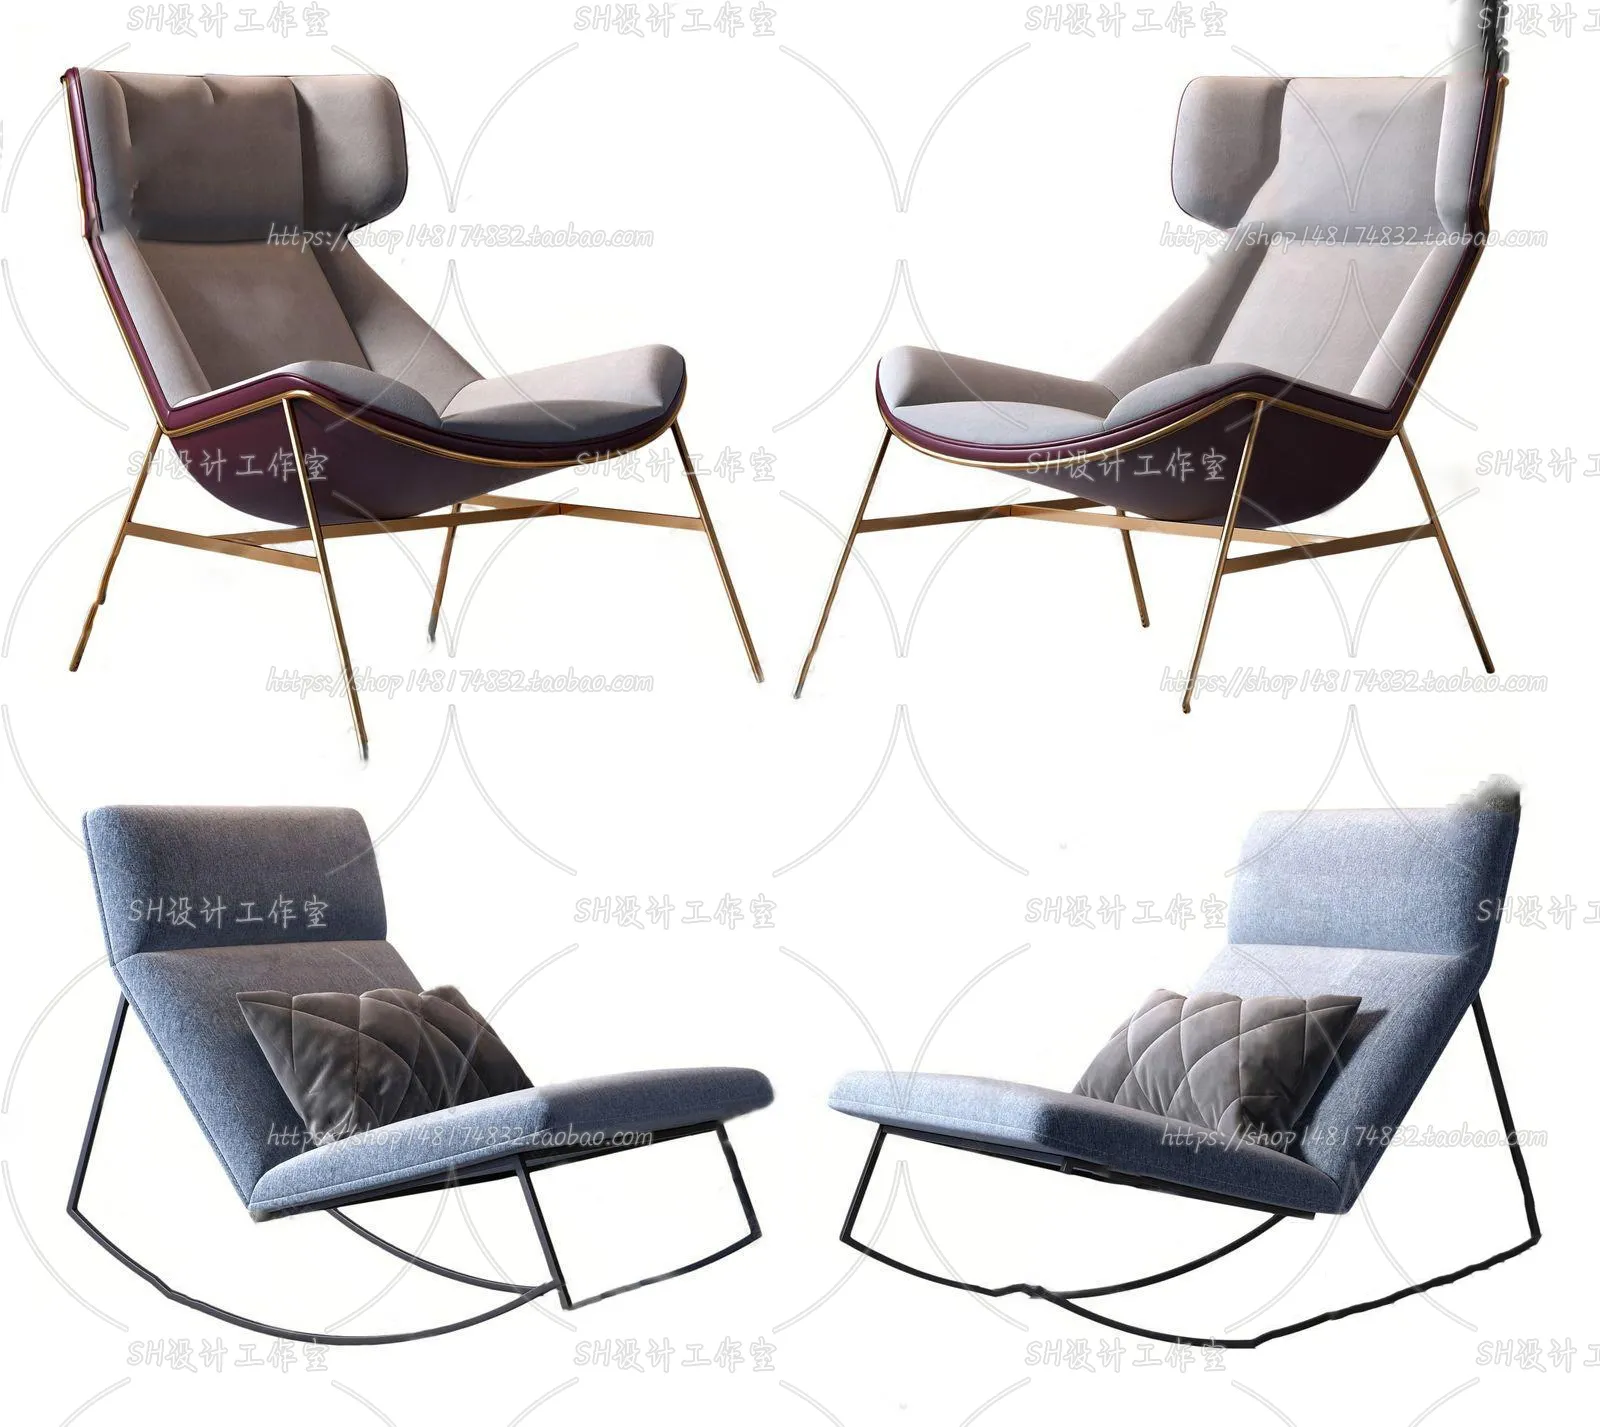 Chair – Single Chair 3D Models – 2005